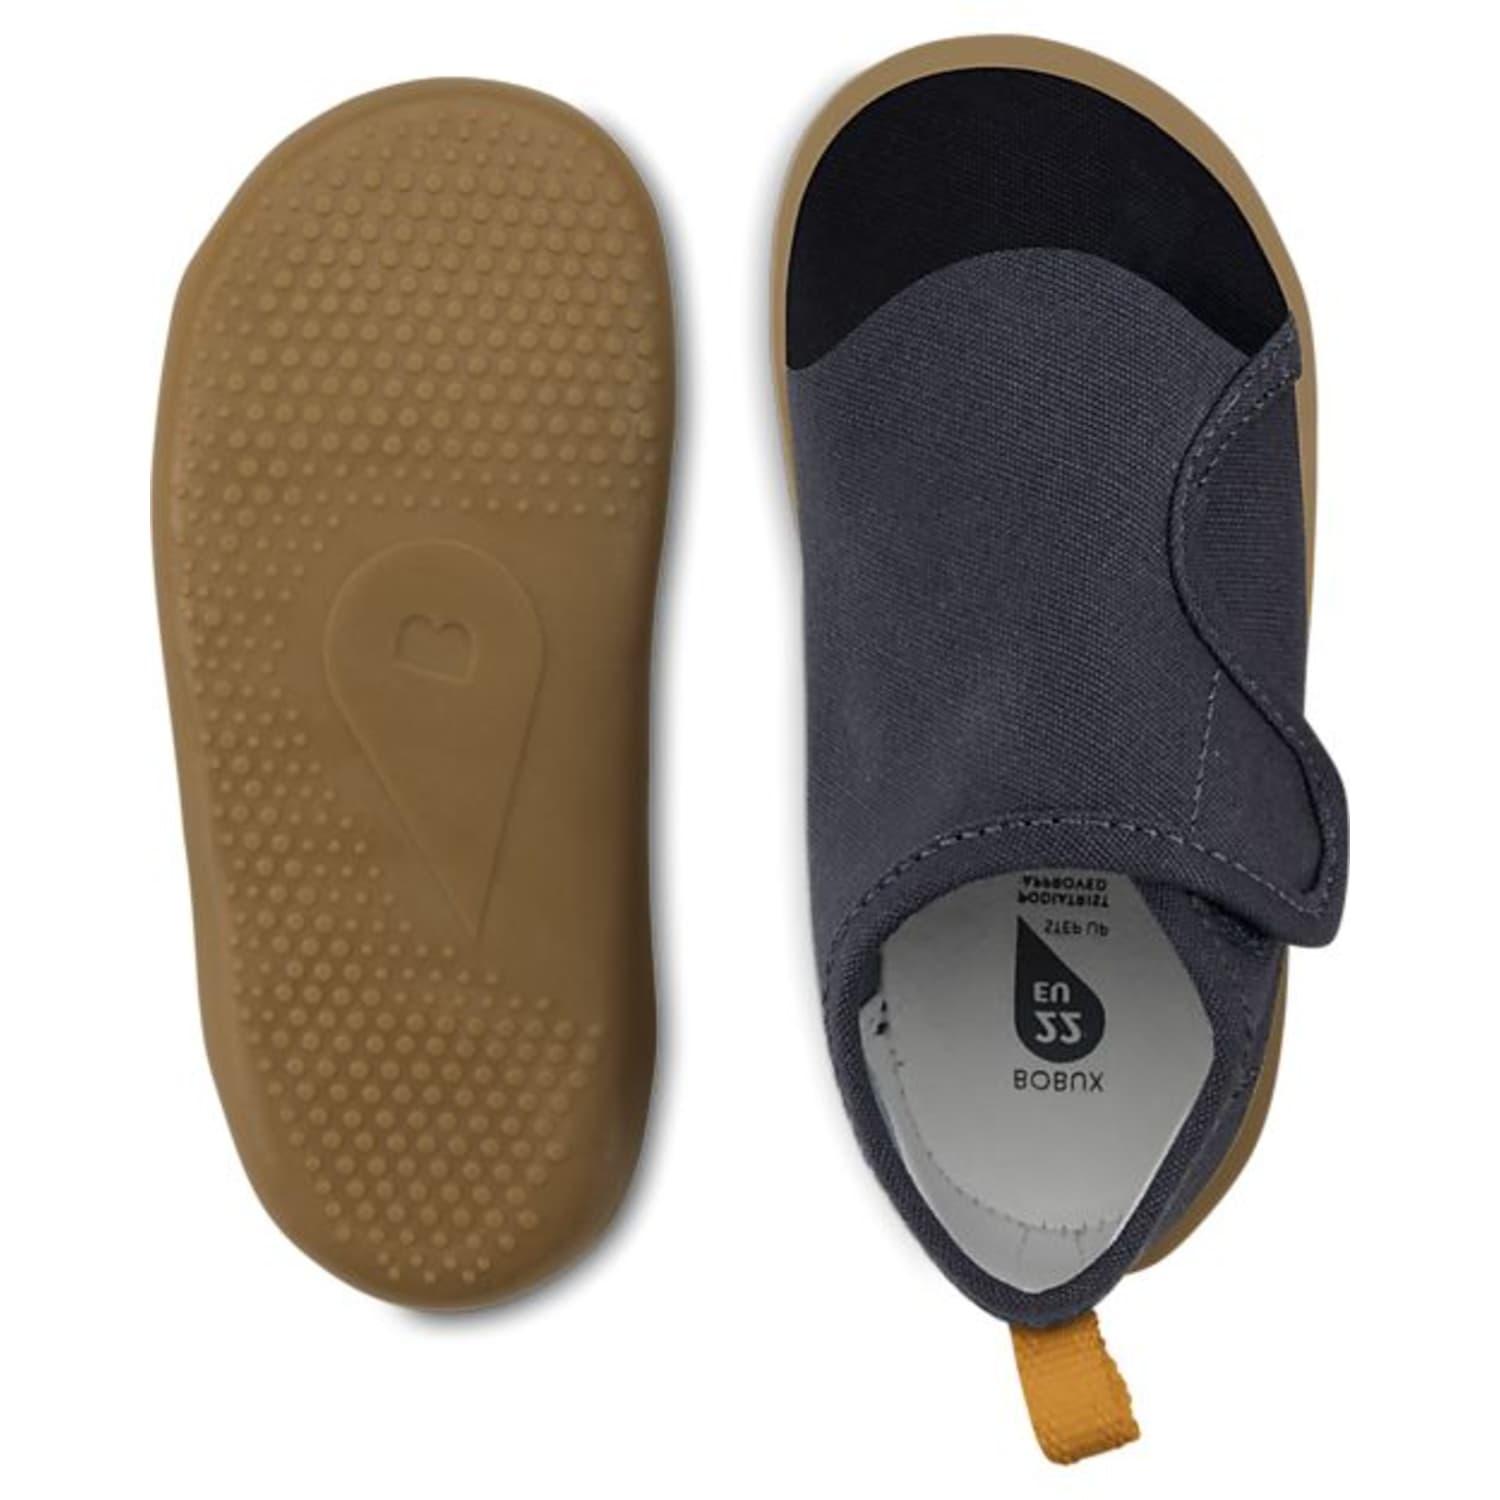 Bobux Xplorer Indie Junior Shoe for Men | Lyst